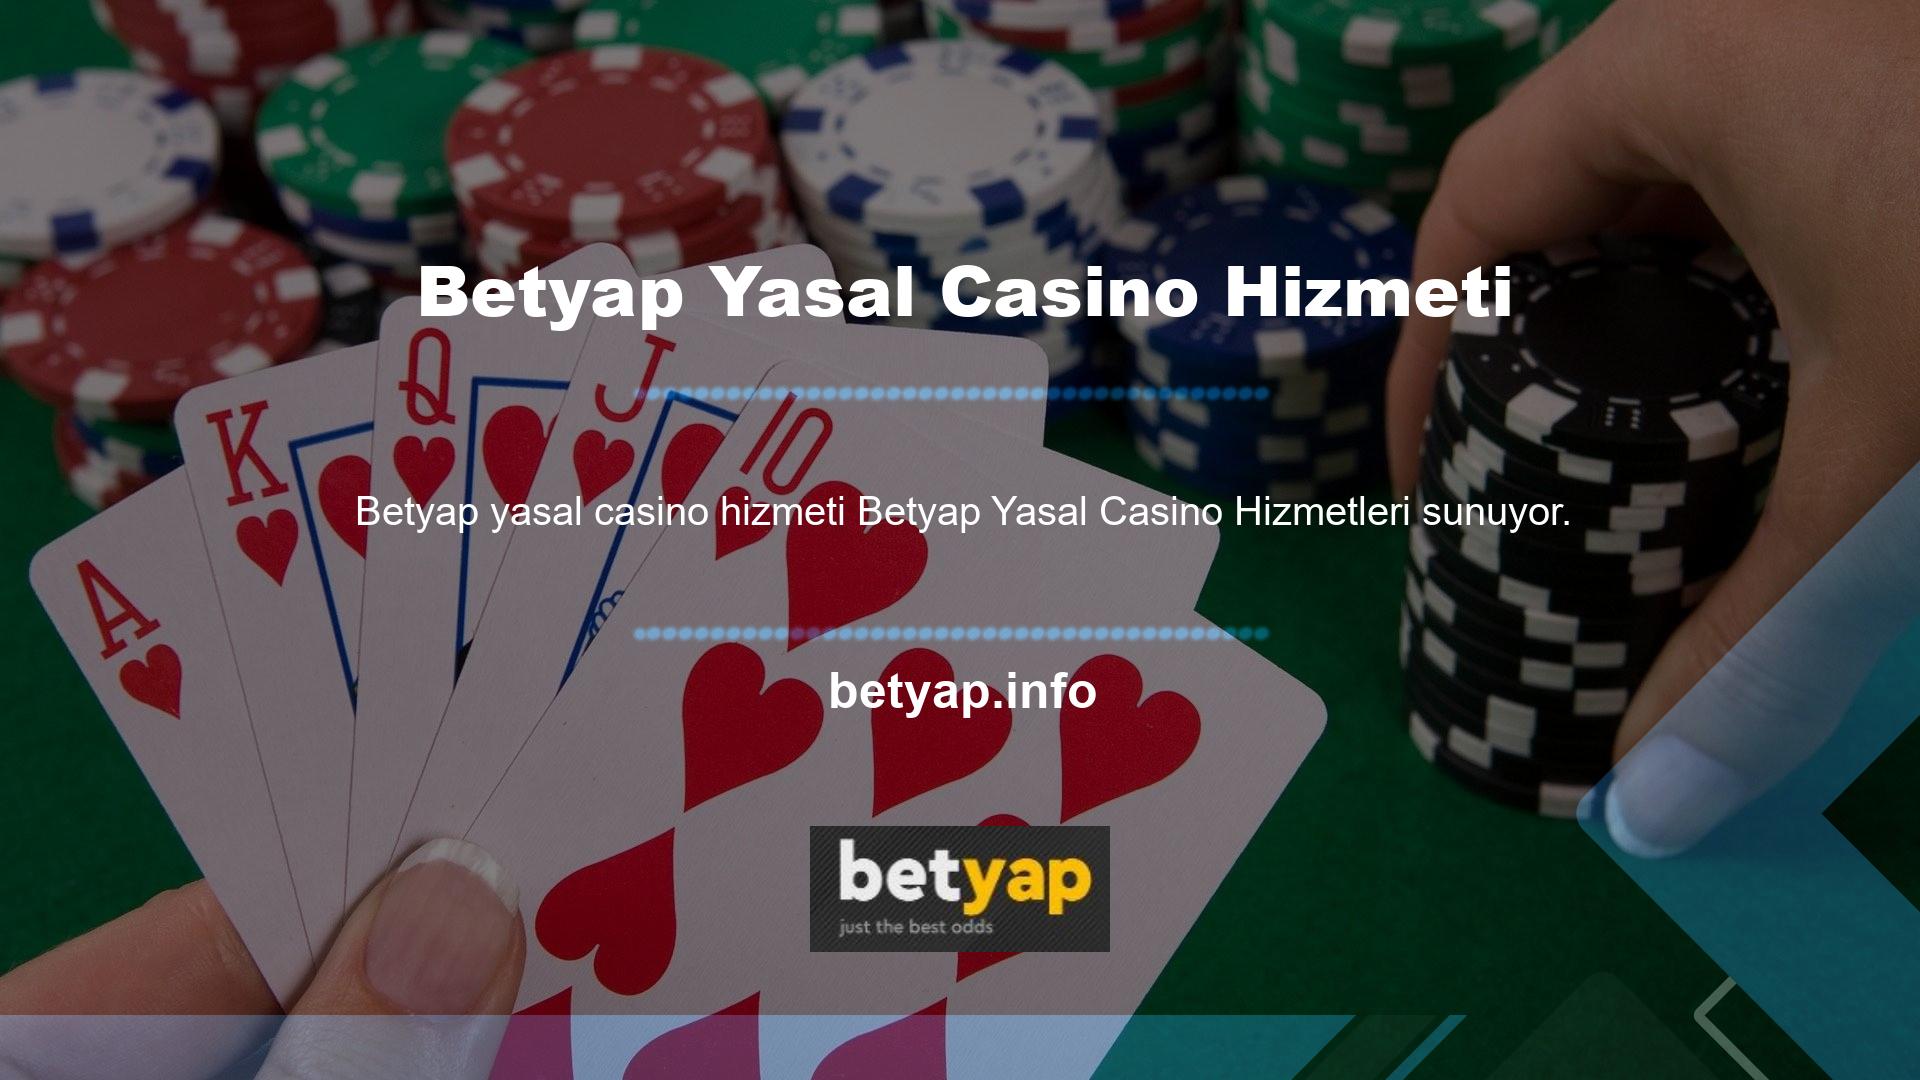 Betyap yasal casino hizmetlerine ilk adımı atıyor ve lisanslı üyelerle tanışıyor